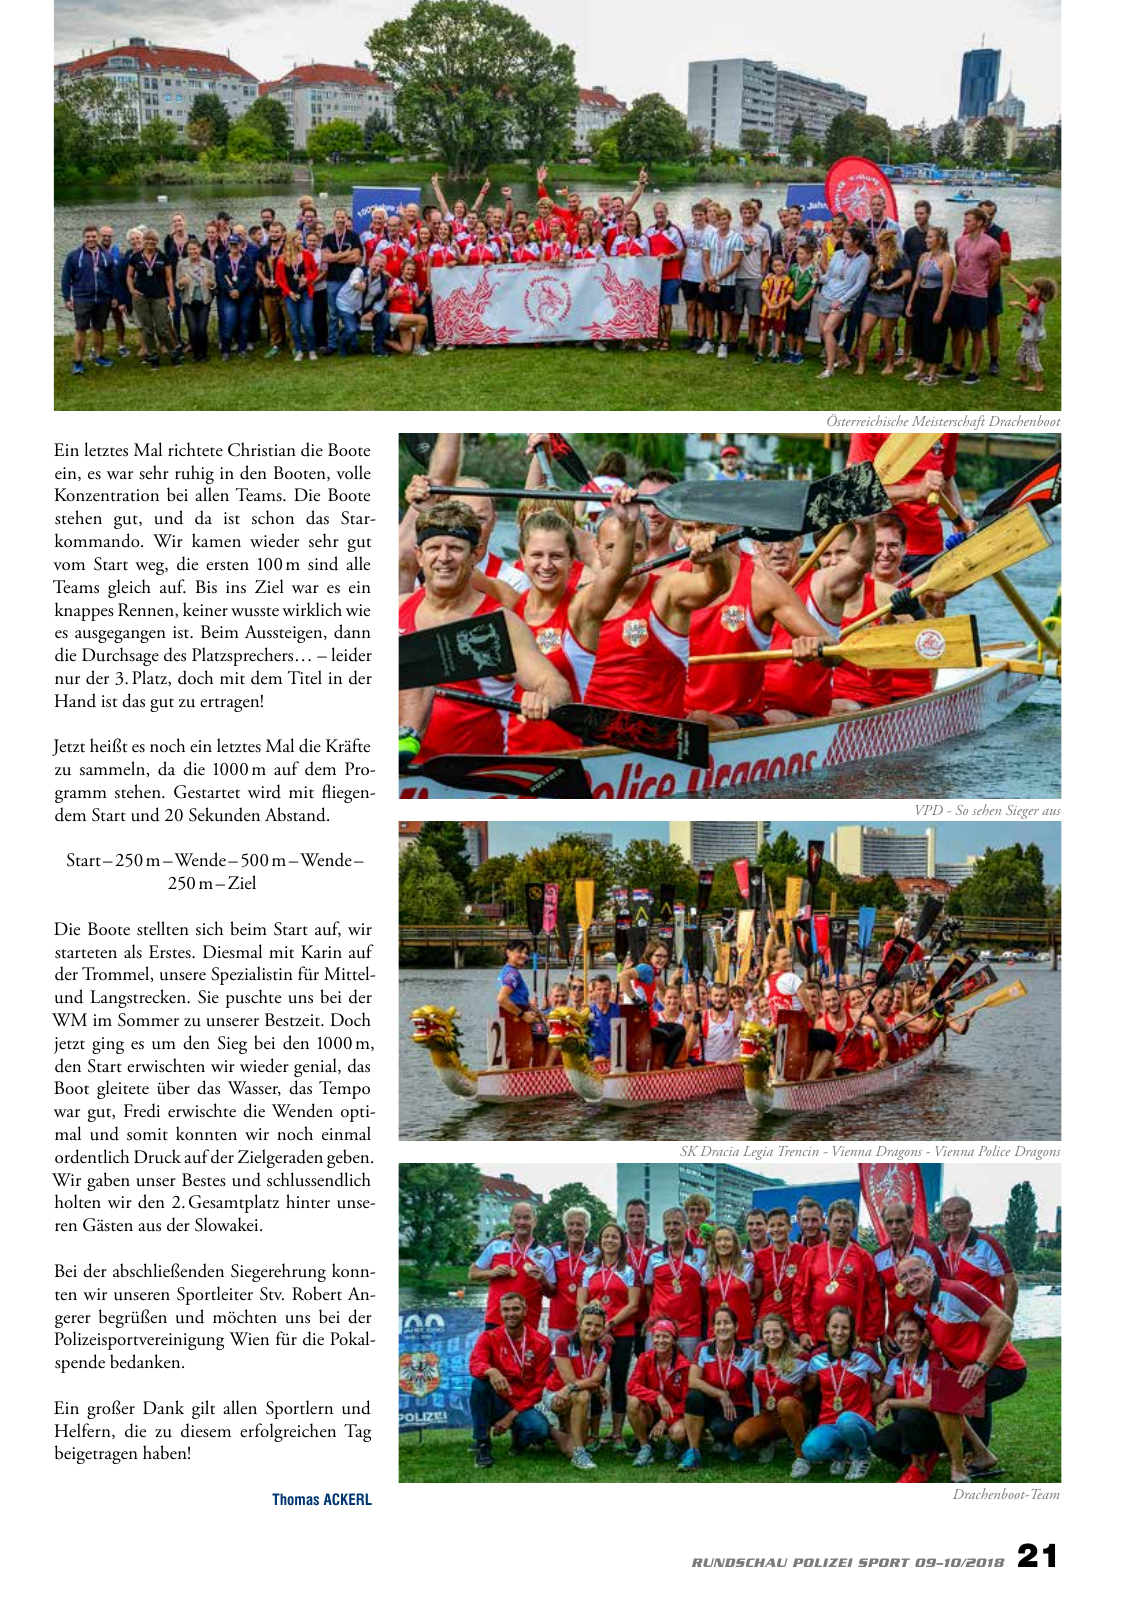 Vorschau Rundschau Polizei Sport 09-10/2018 Seite 21